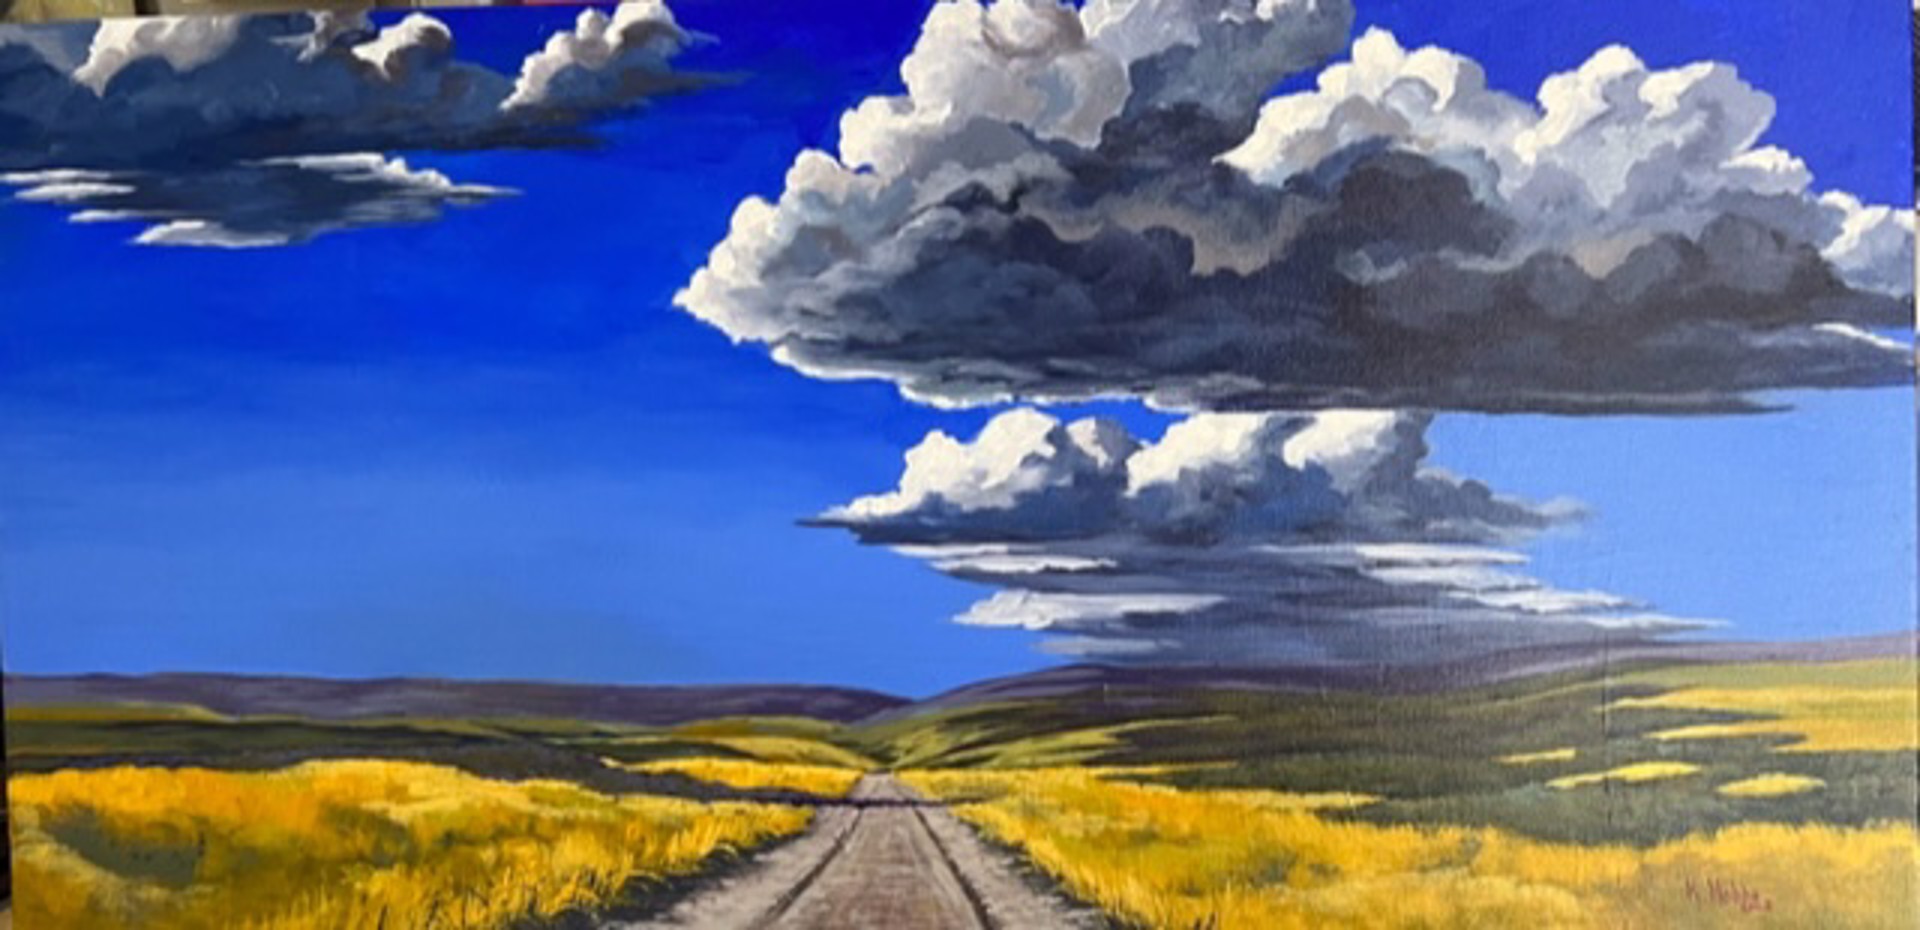 Prairie Shadows by Kevin Hobbs